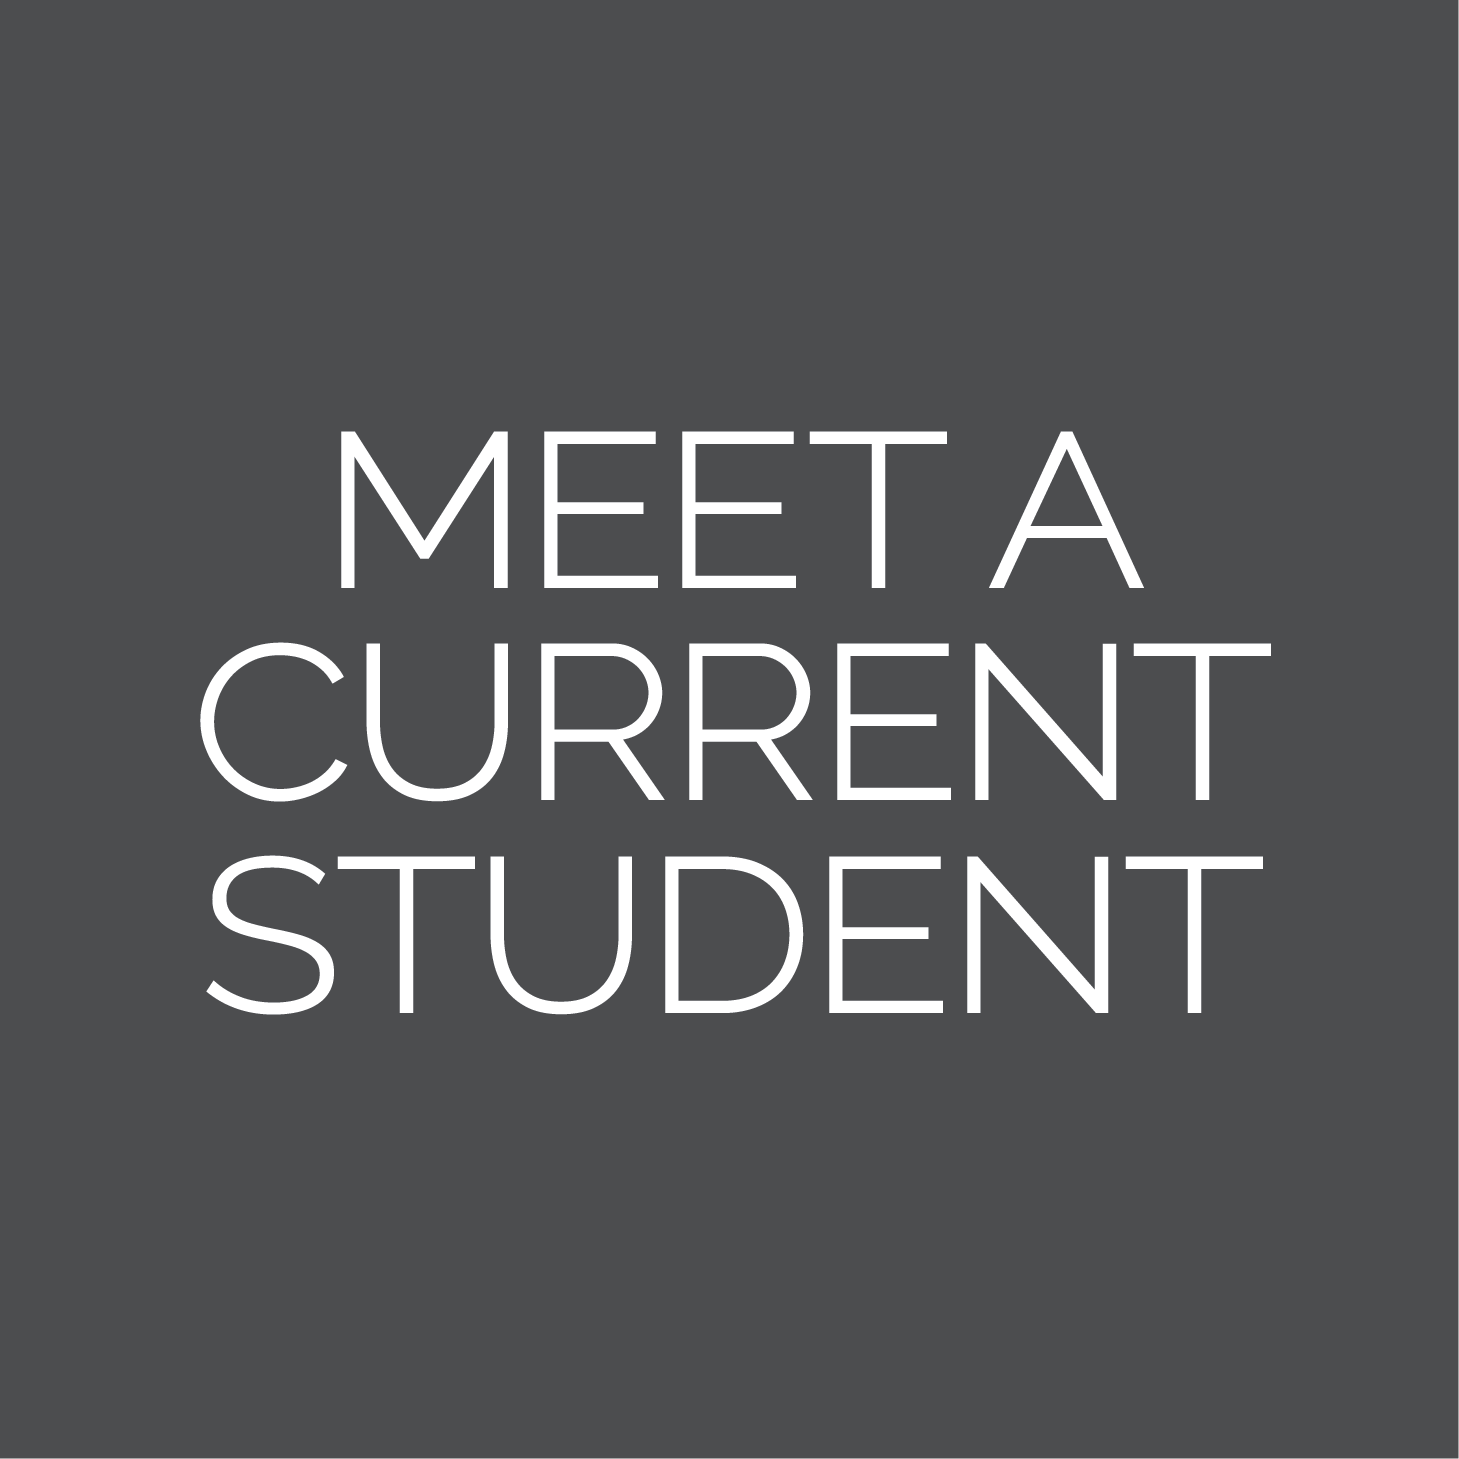 Meet A Student